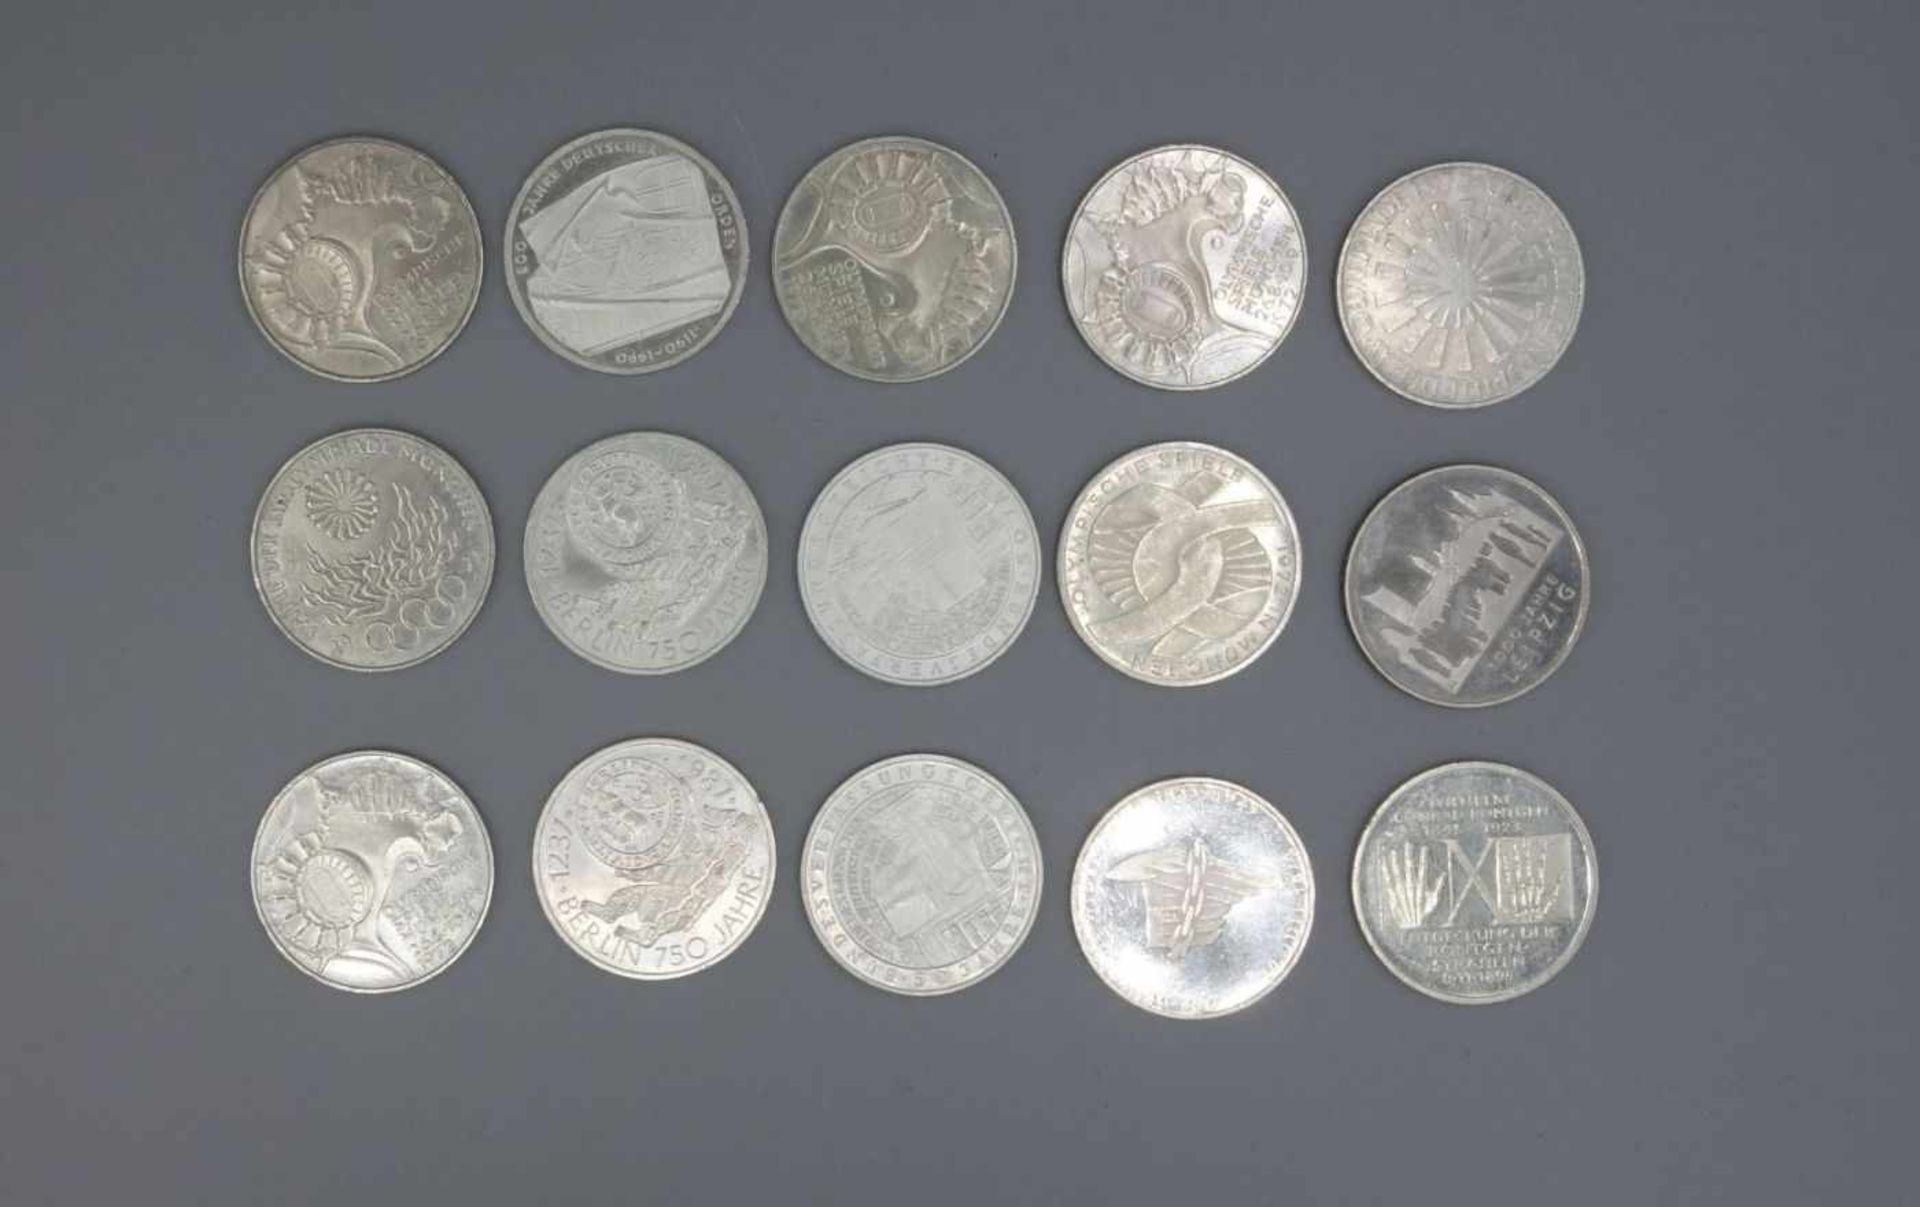 KONVOLUT SILBER-MÜNZEN: 10 DM, Konvolut von 15 Münzen, Silber (Gesamtgewicht 249 g), darunter 1 x 10